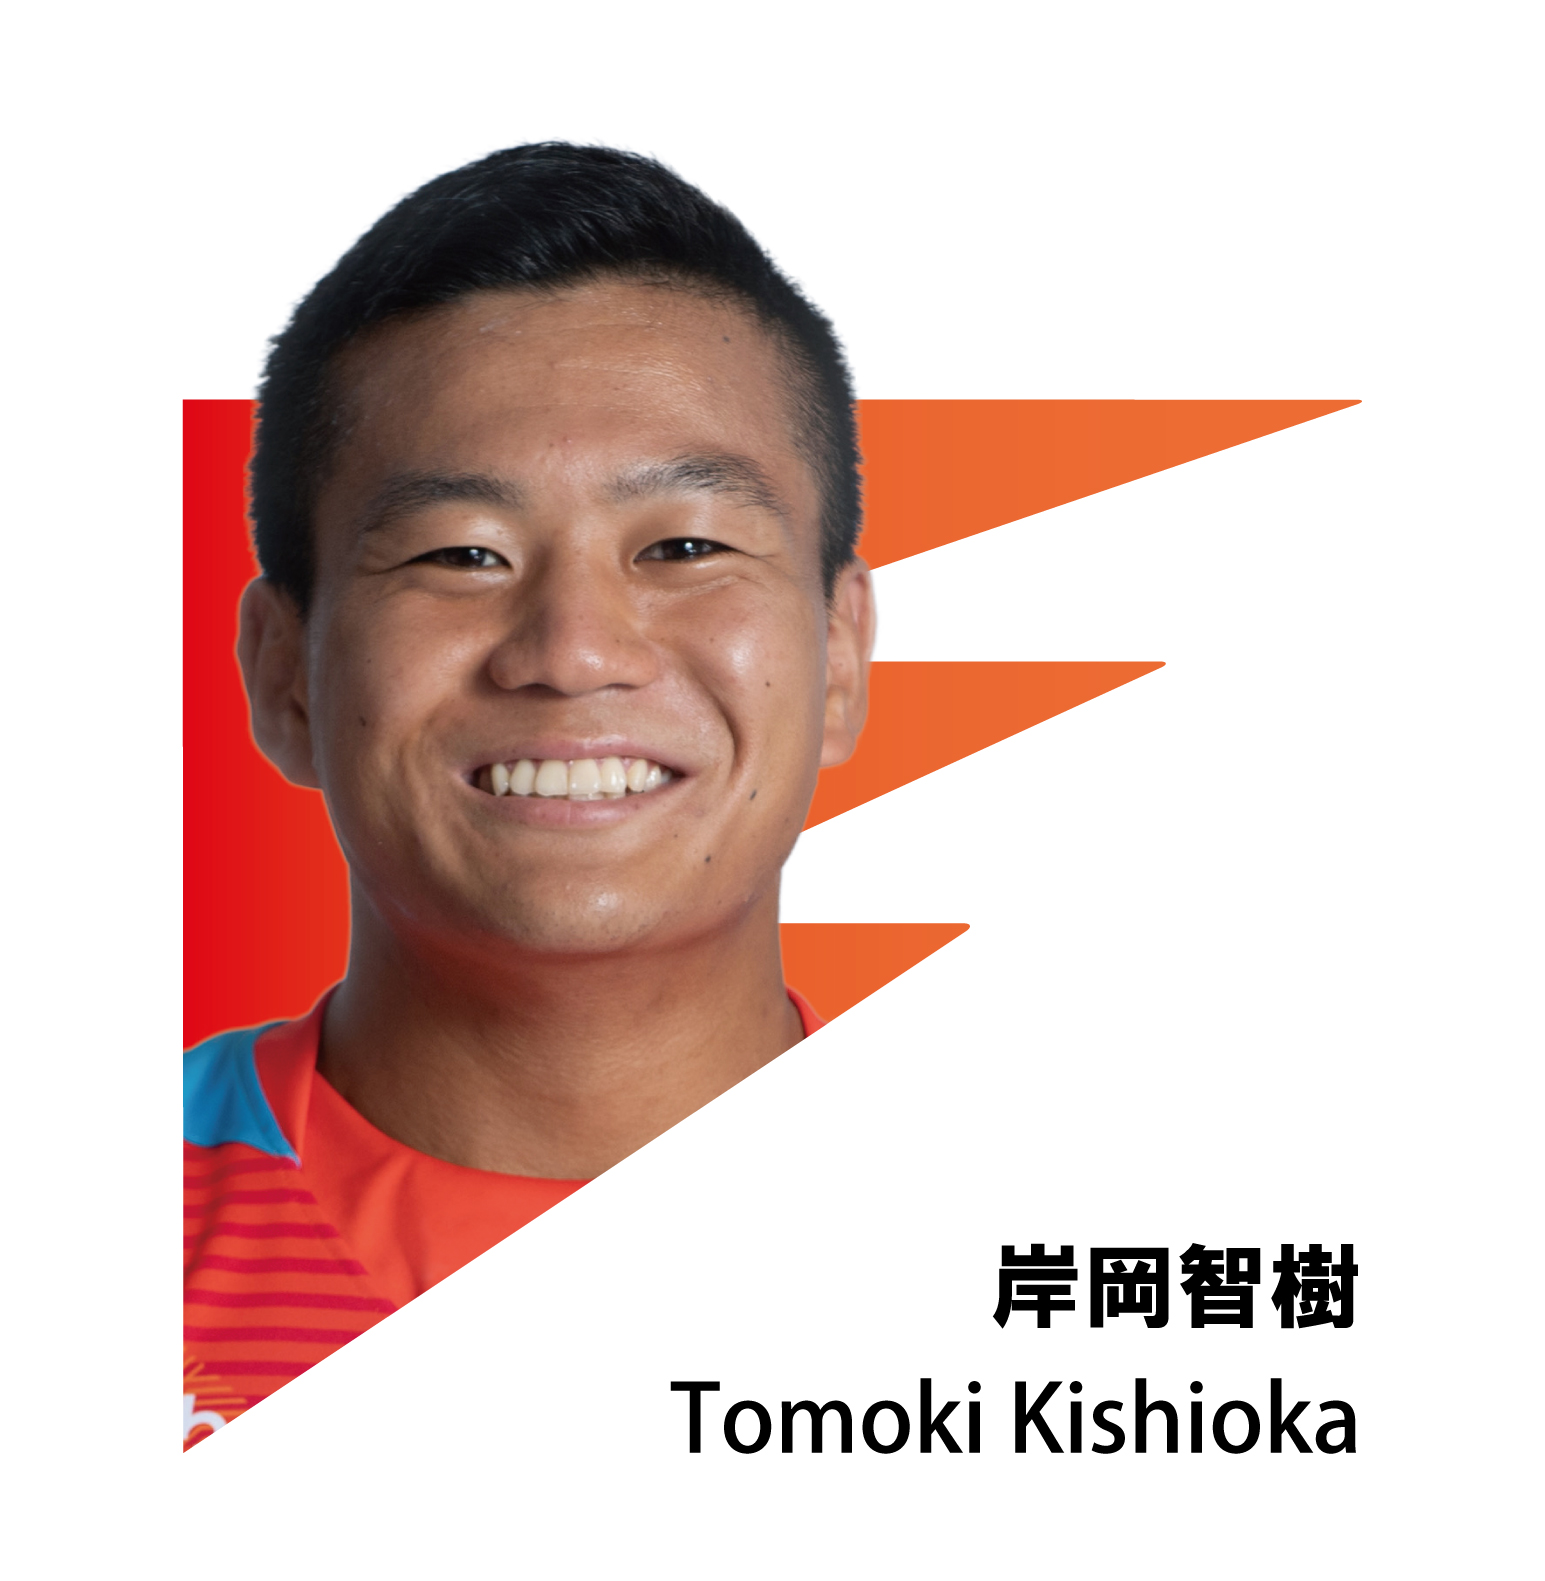 TOMOKI KISHIOKA